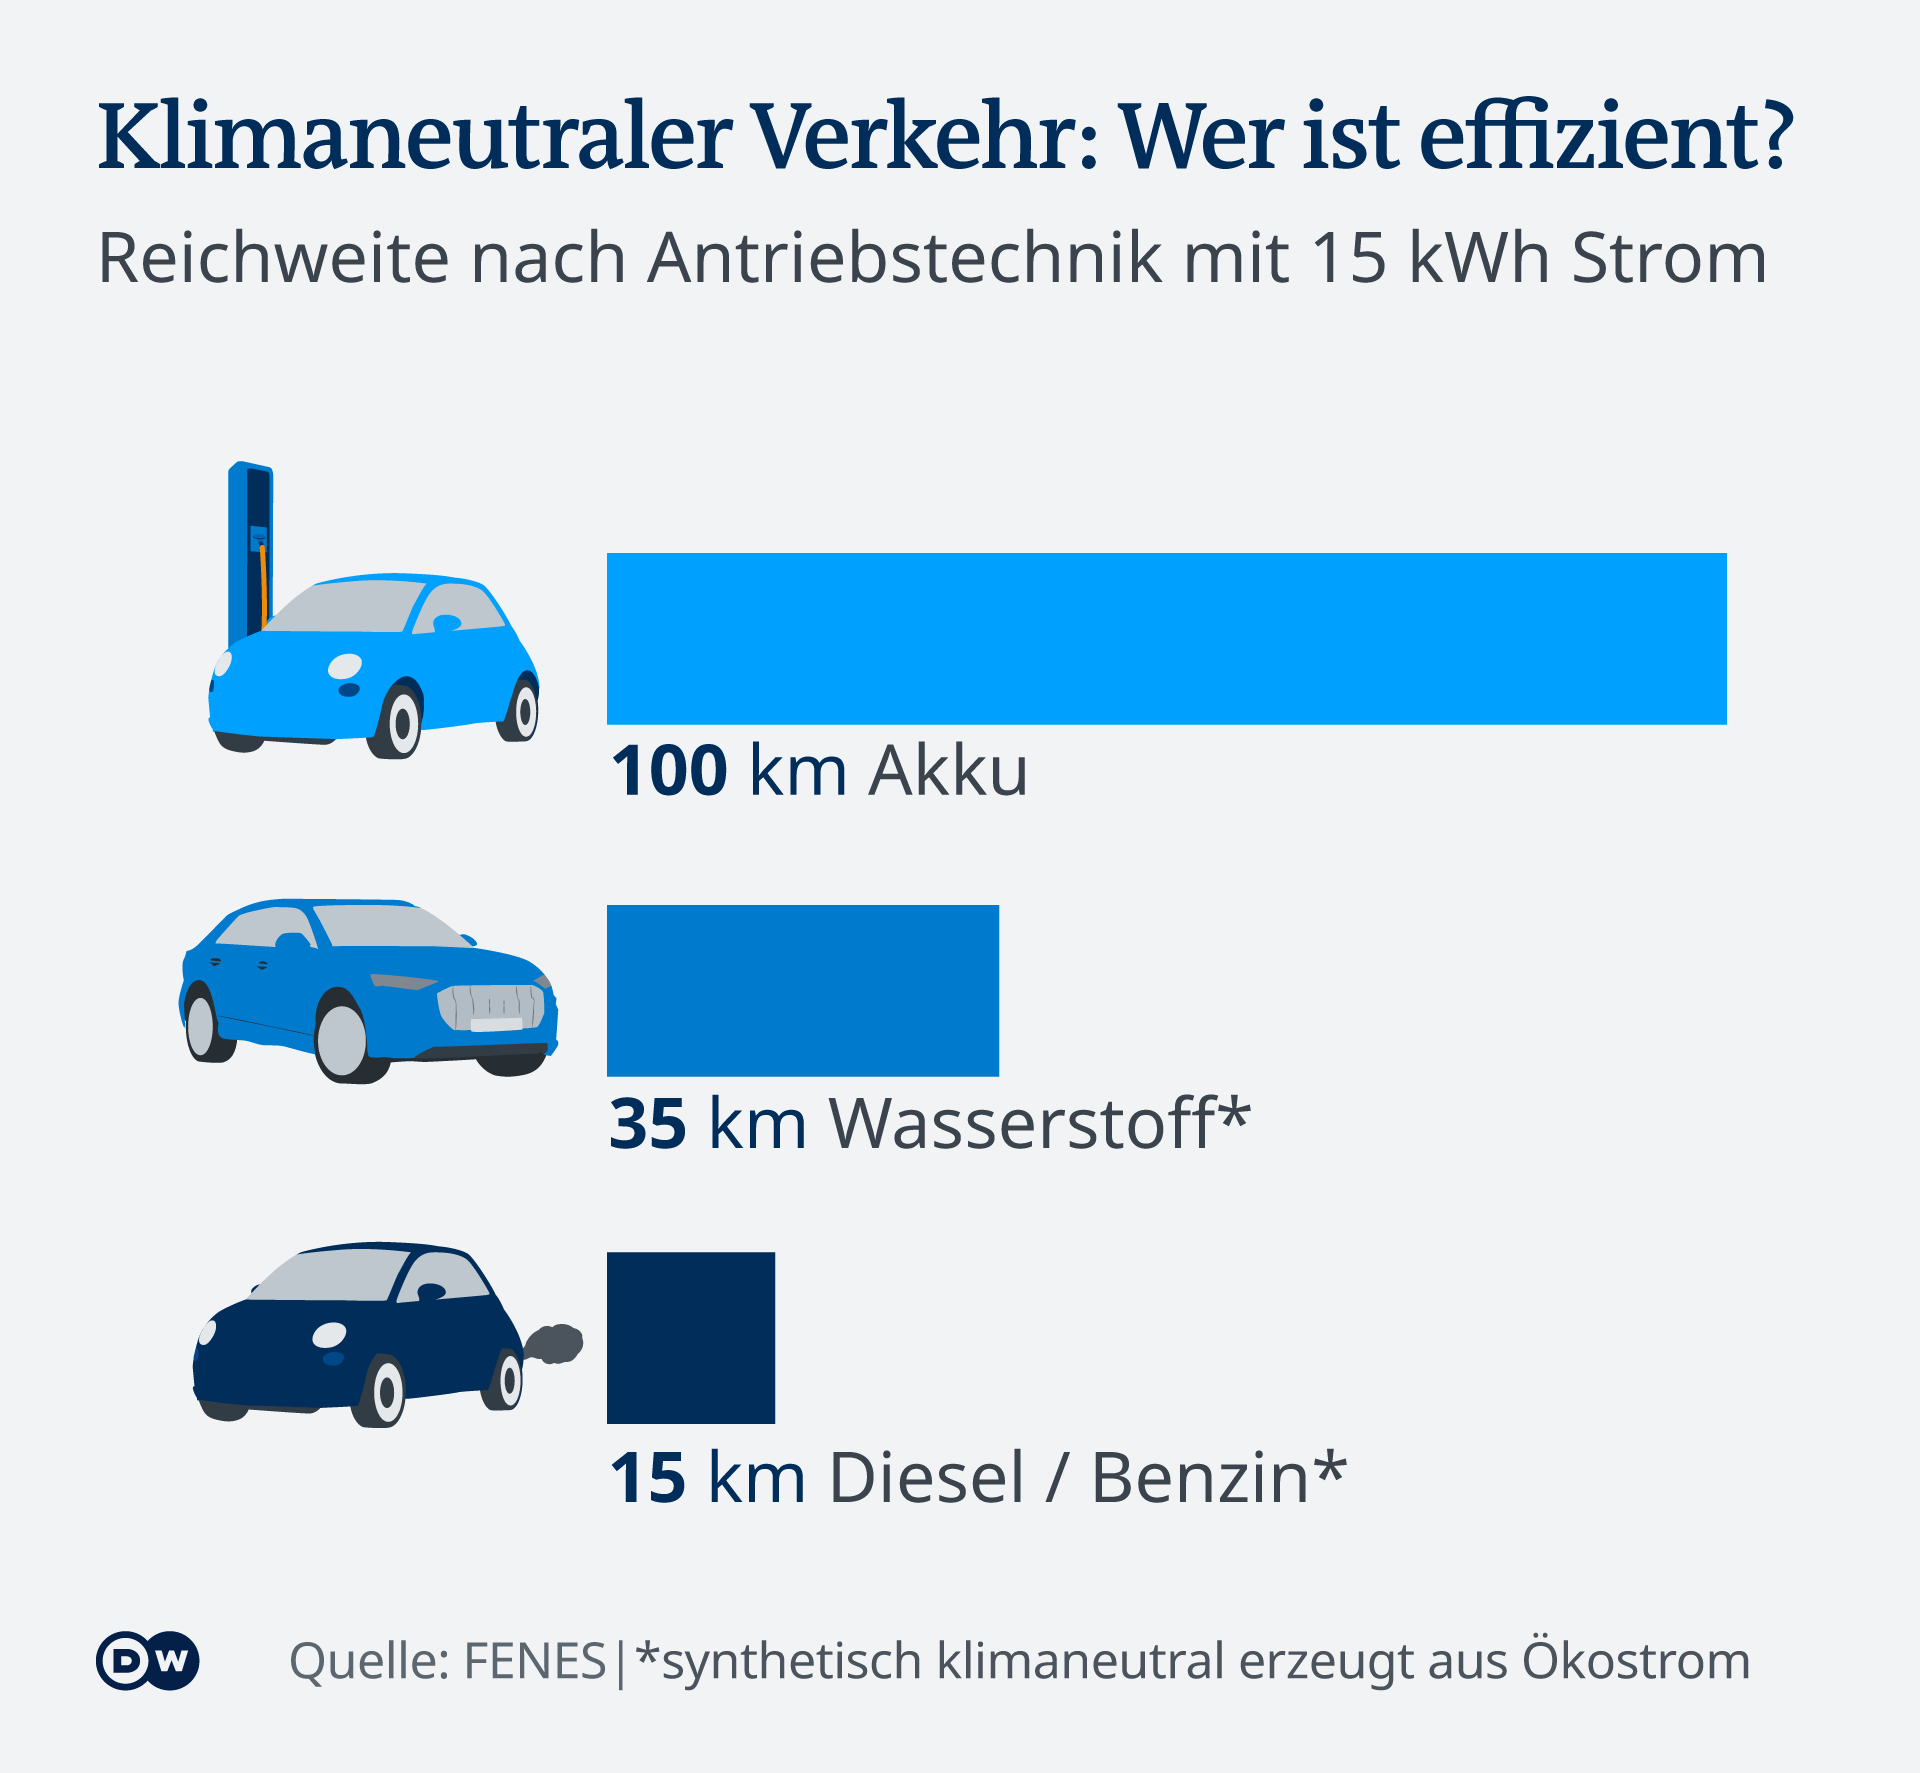 Infografik Klimaneutraler Verkehr: Wer ist effizient? Reichweite nach Antriebstechnik mit 15 kWh Strom im Vergleich